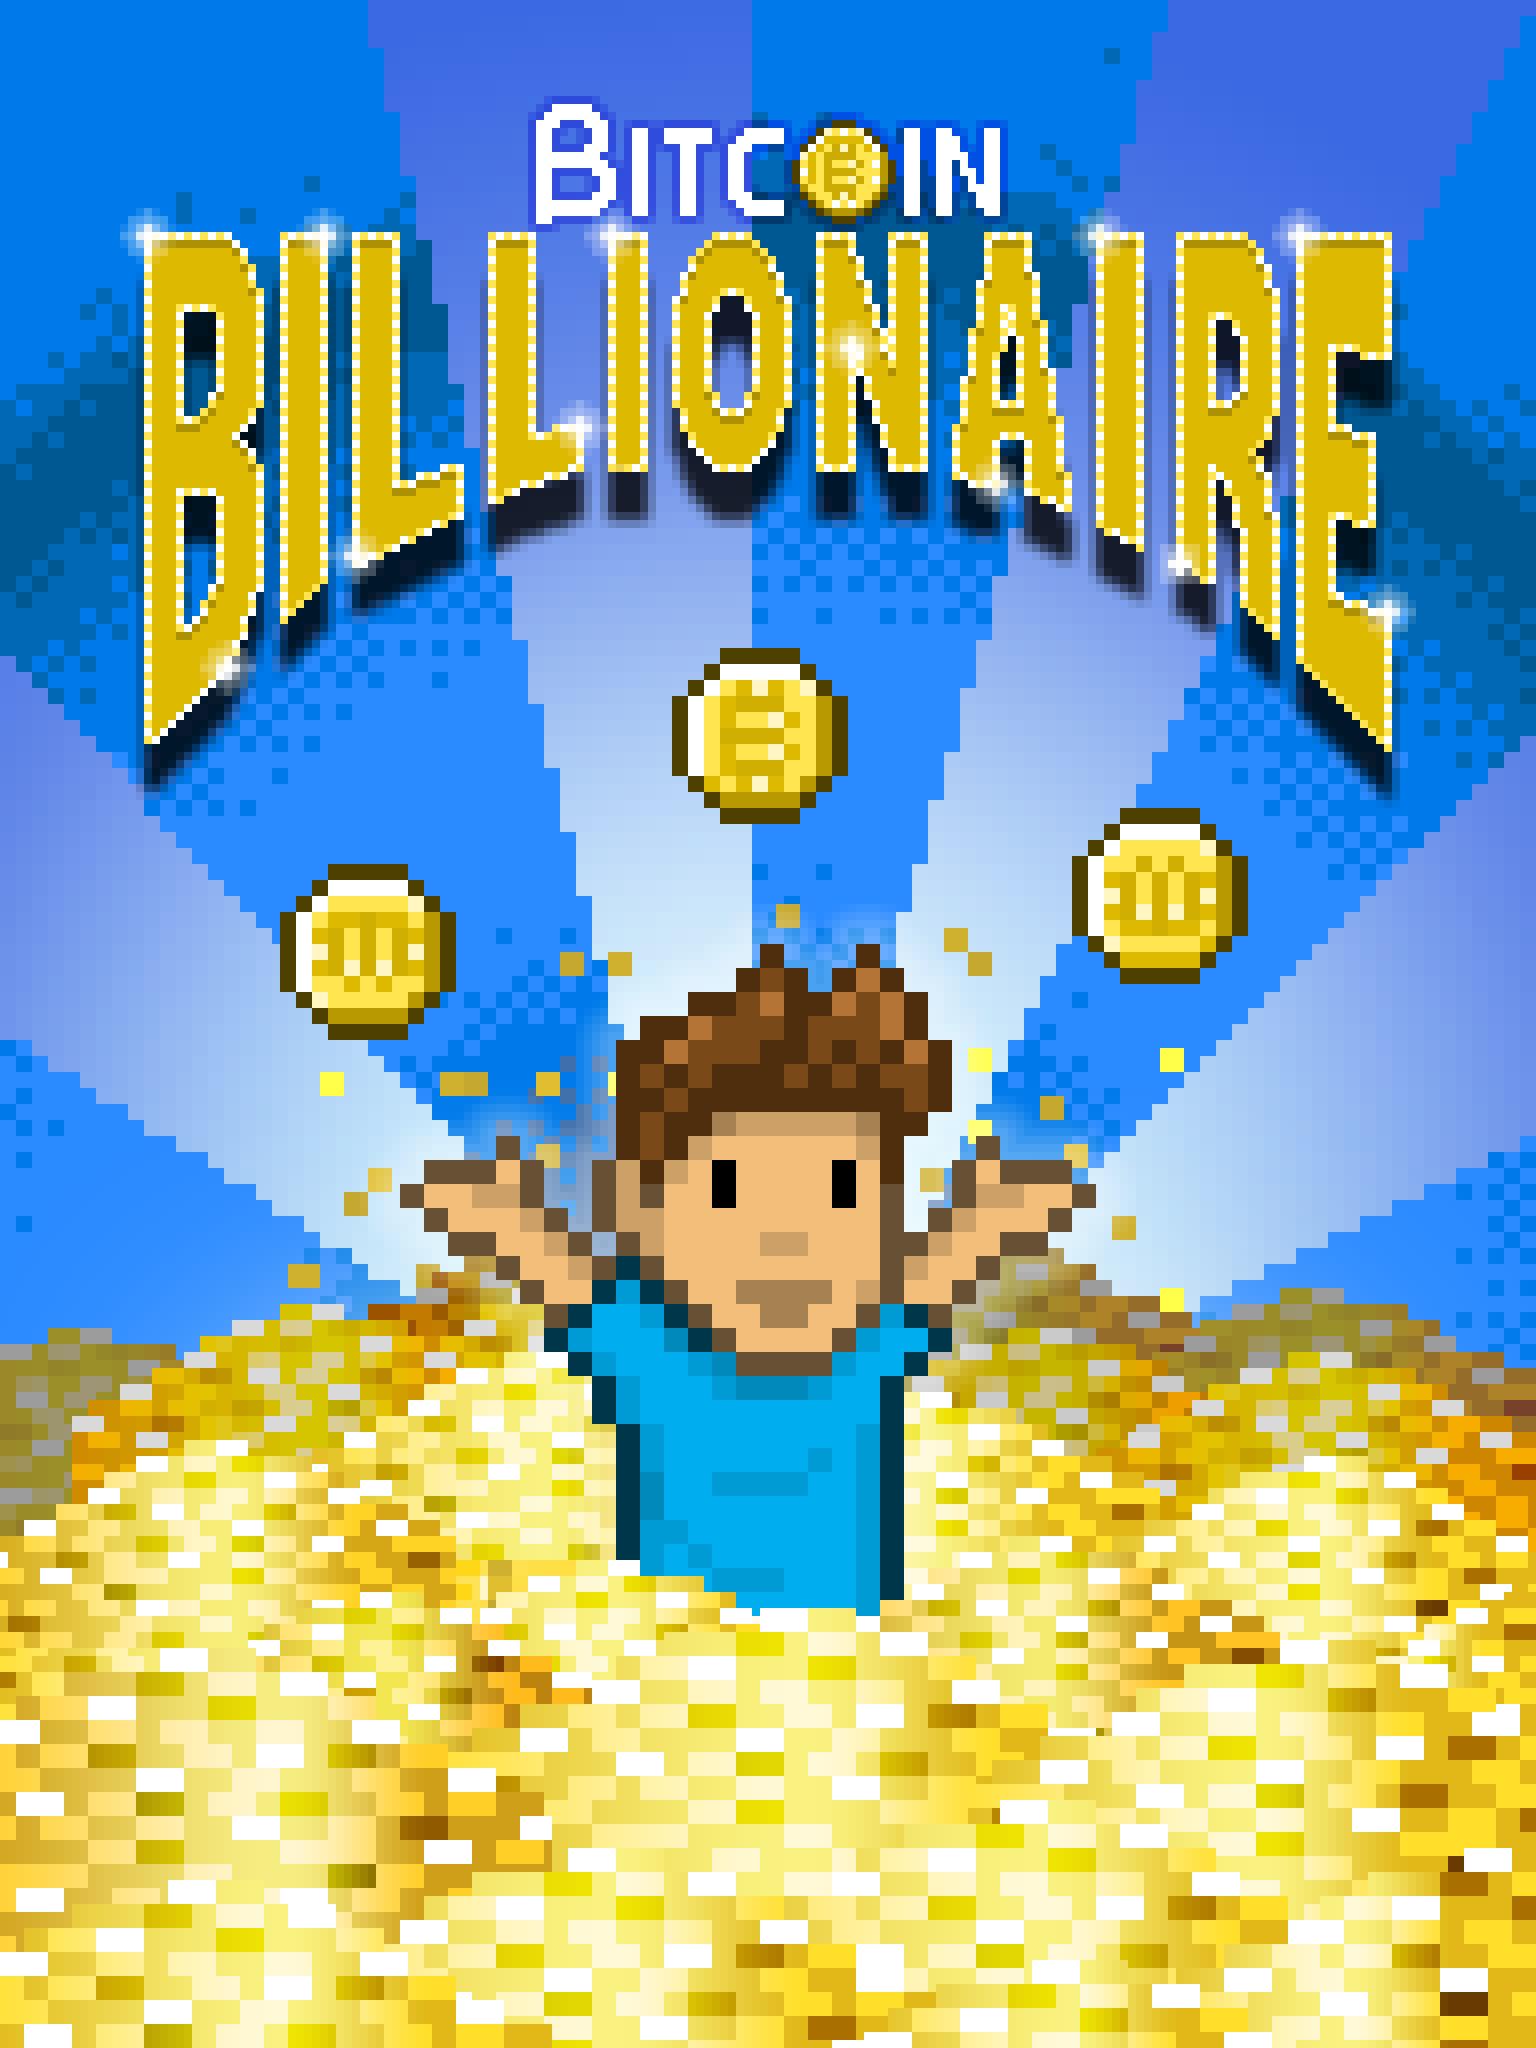 Bitcoin Billionaire - Fake Bitcoins, Real Fun 4.14.1 Screenshot 14